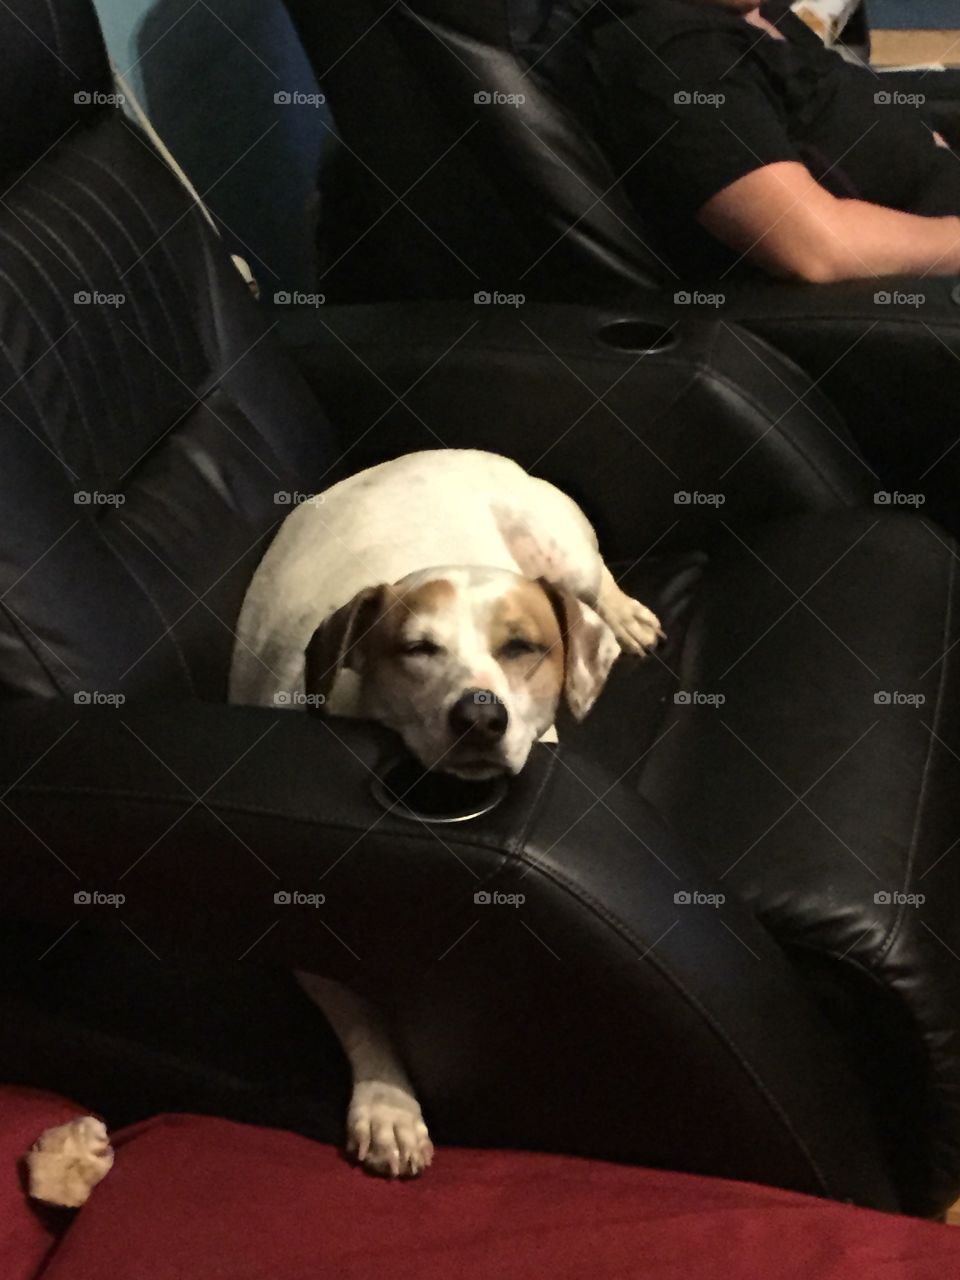 Snoopy on the couch . Snoopy on the couch sleeping 